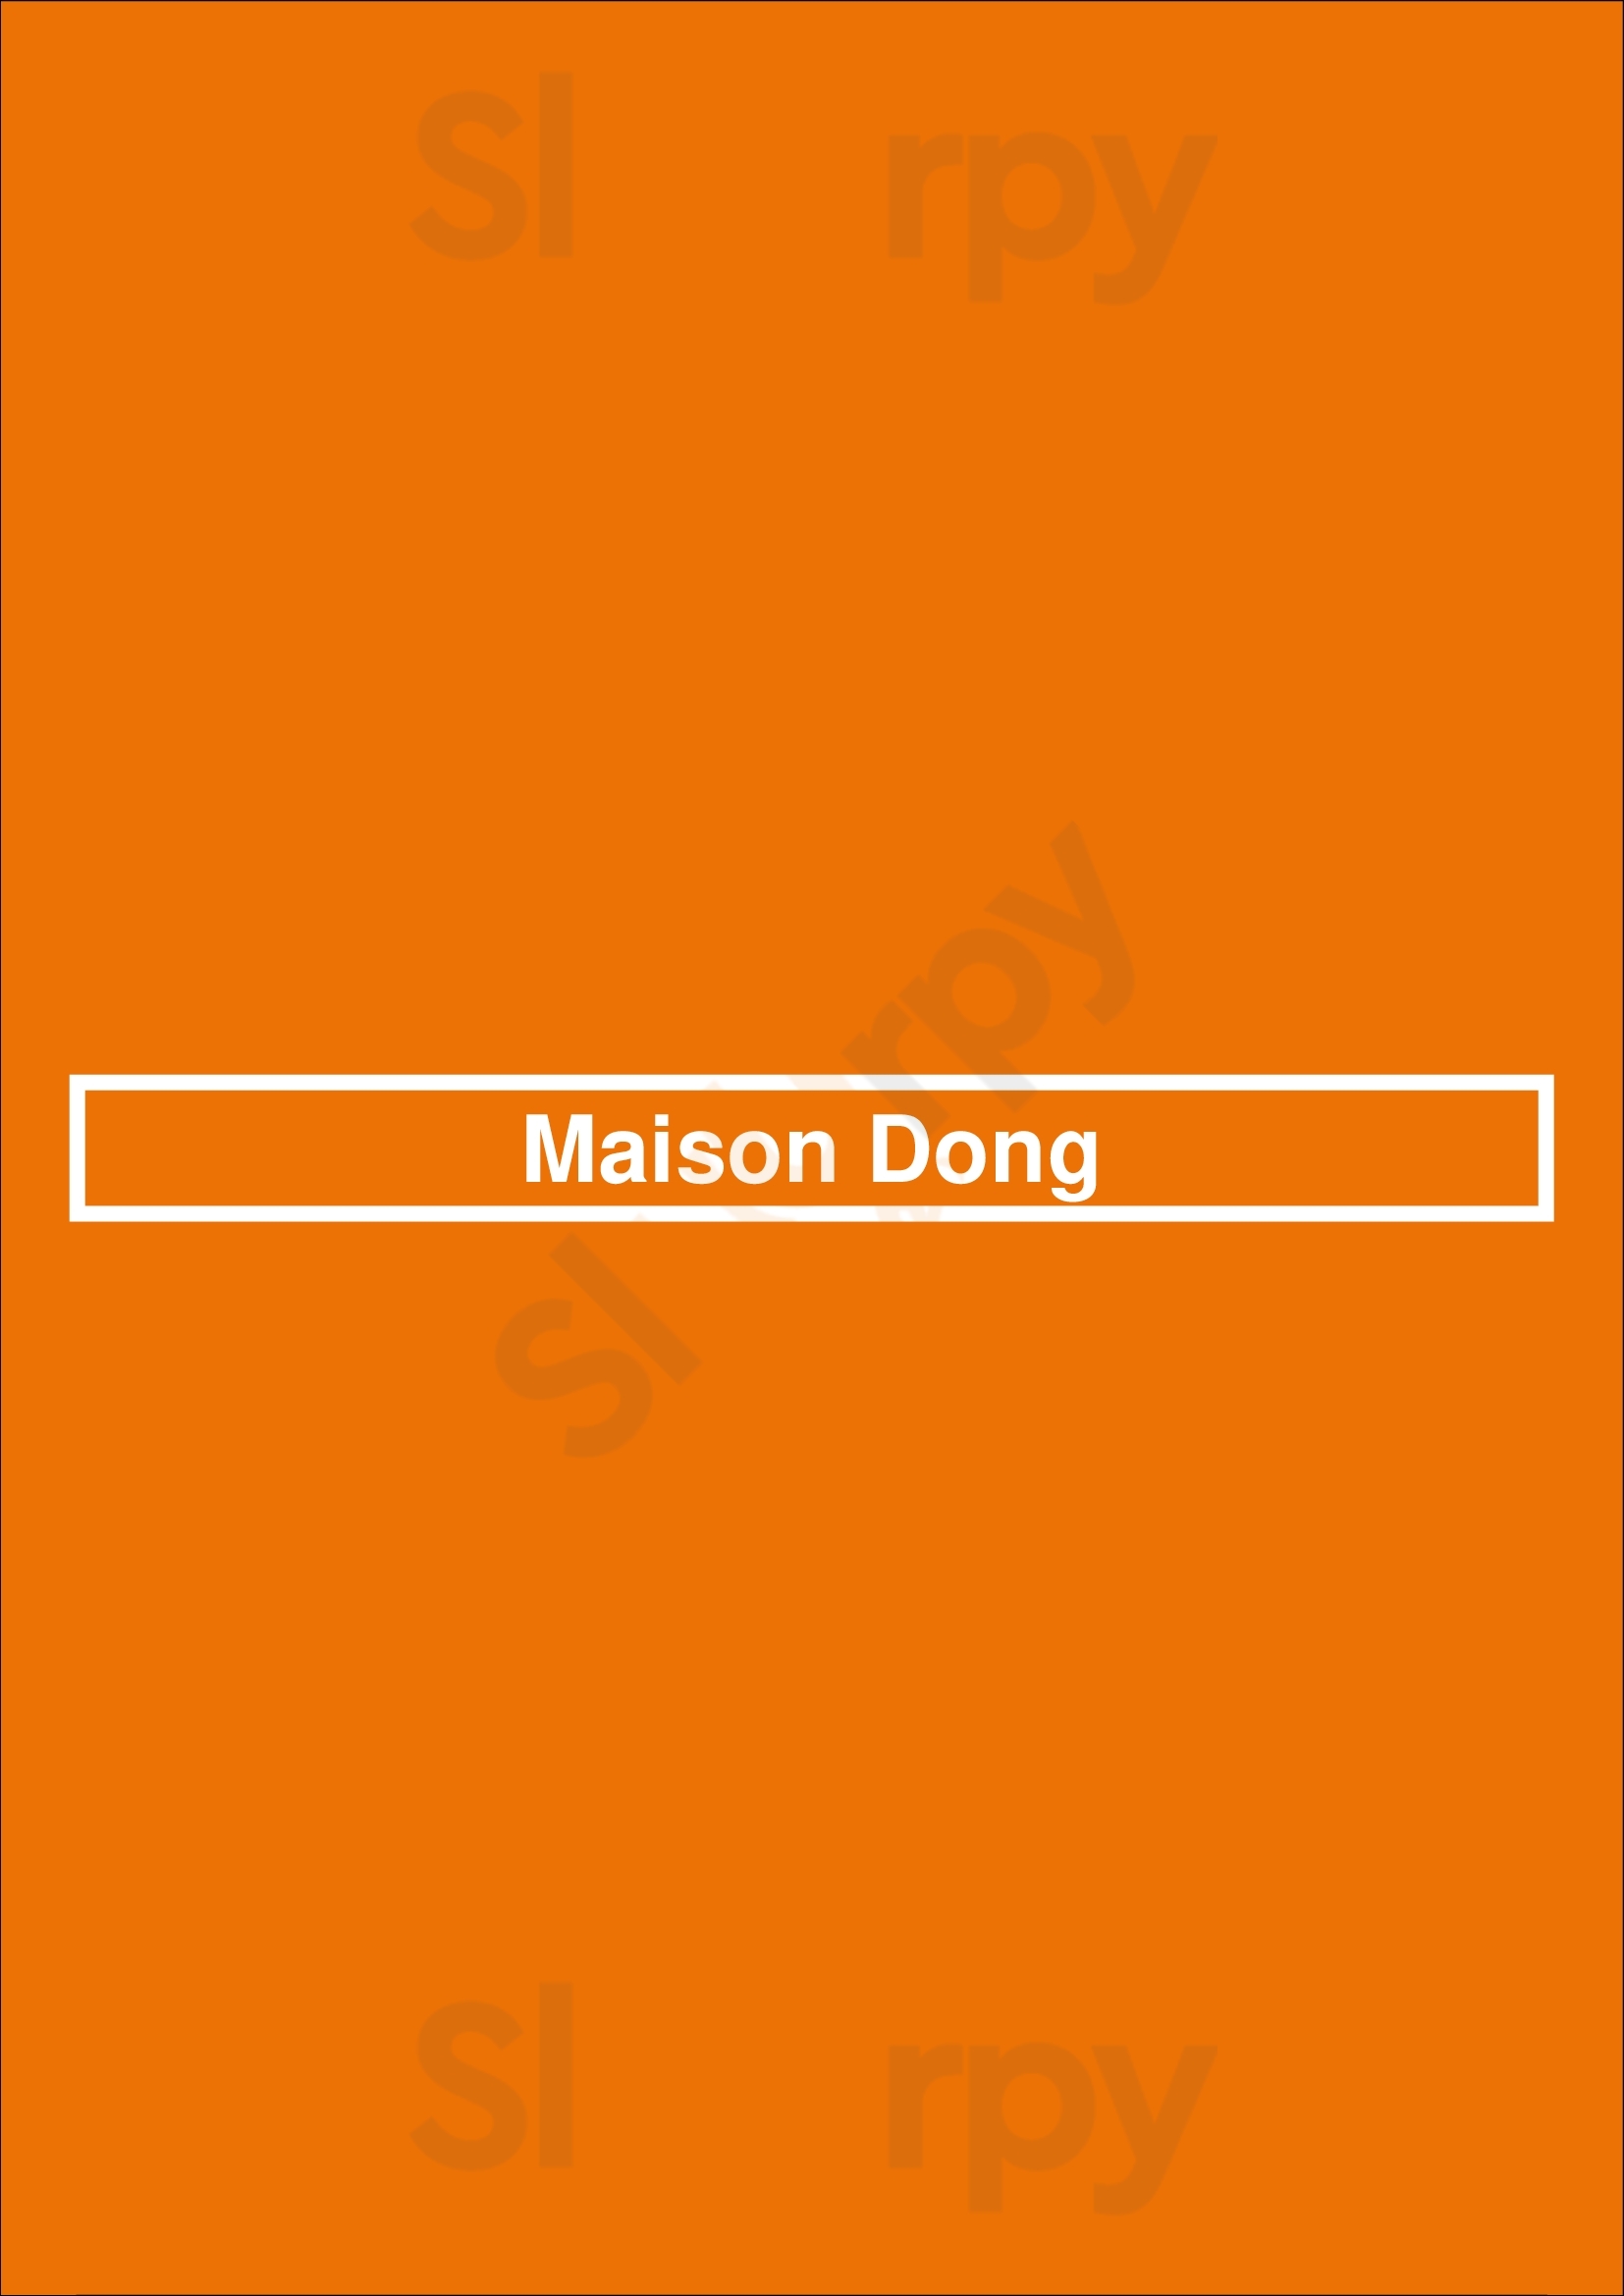 Maison Dong Paris Menu - 1